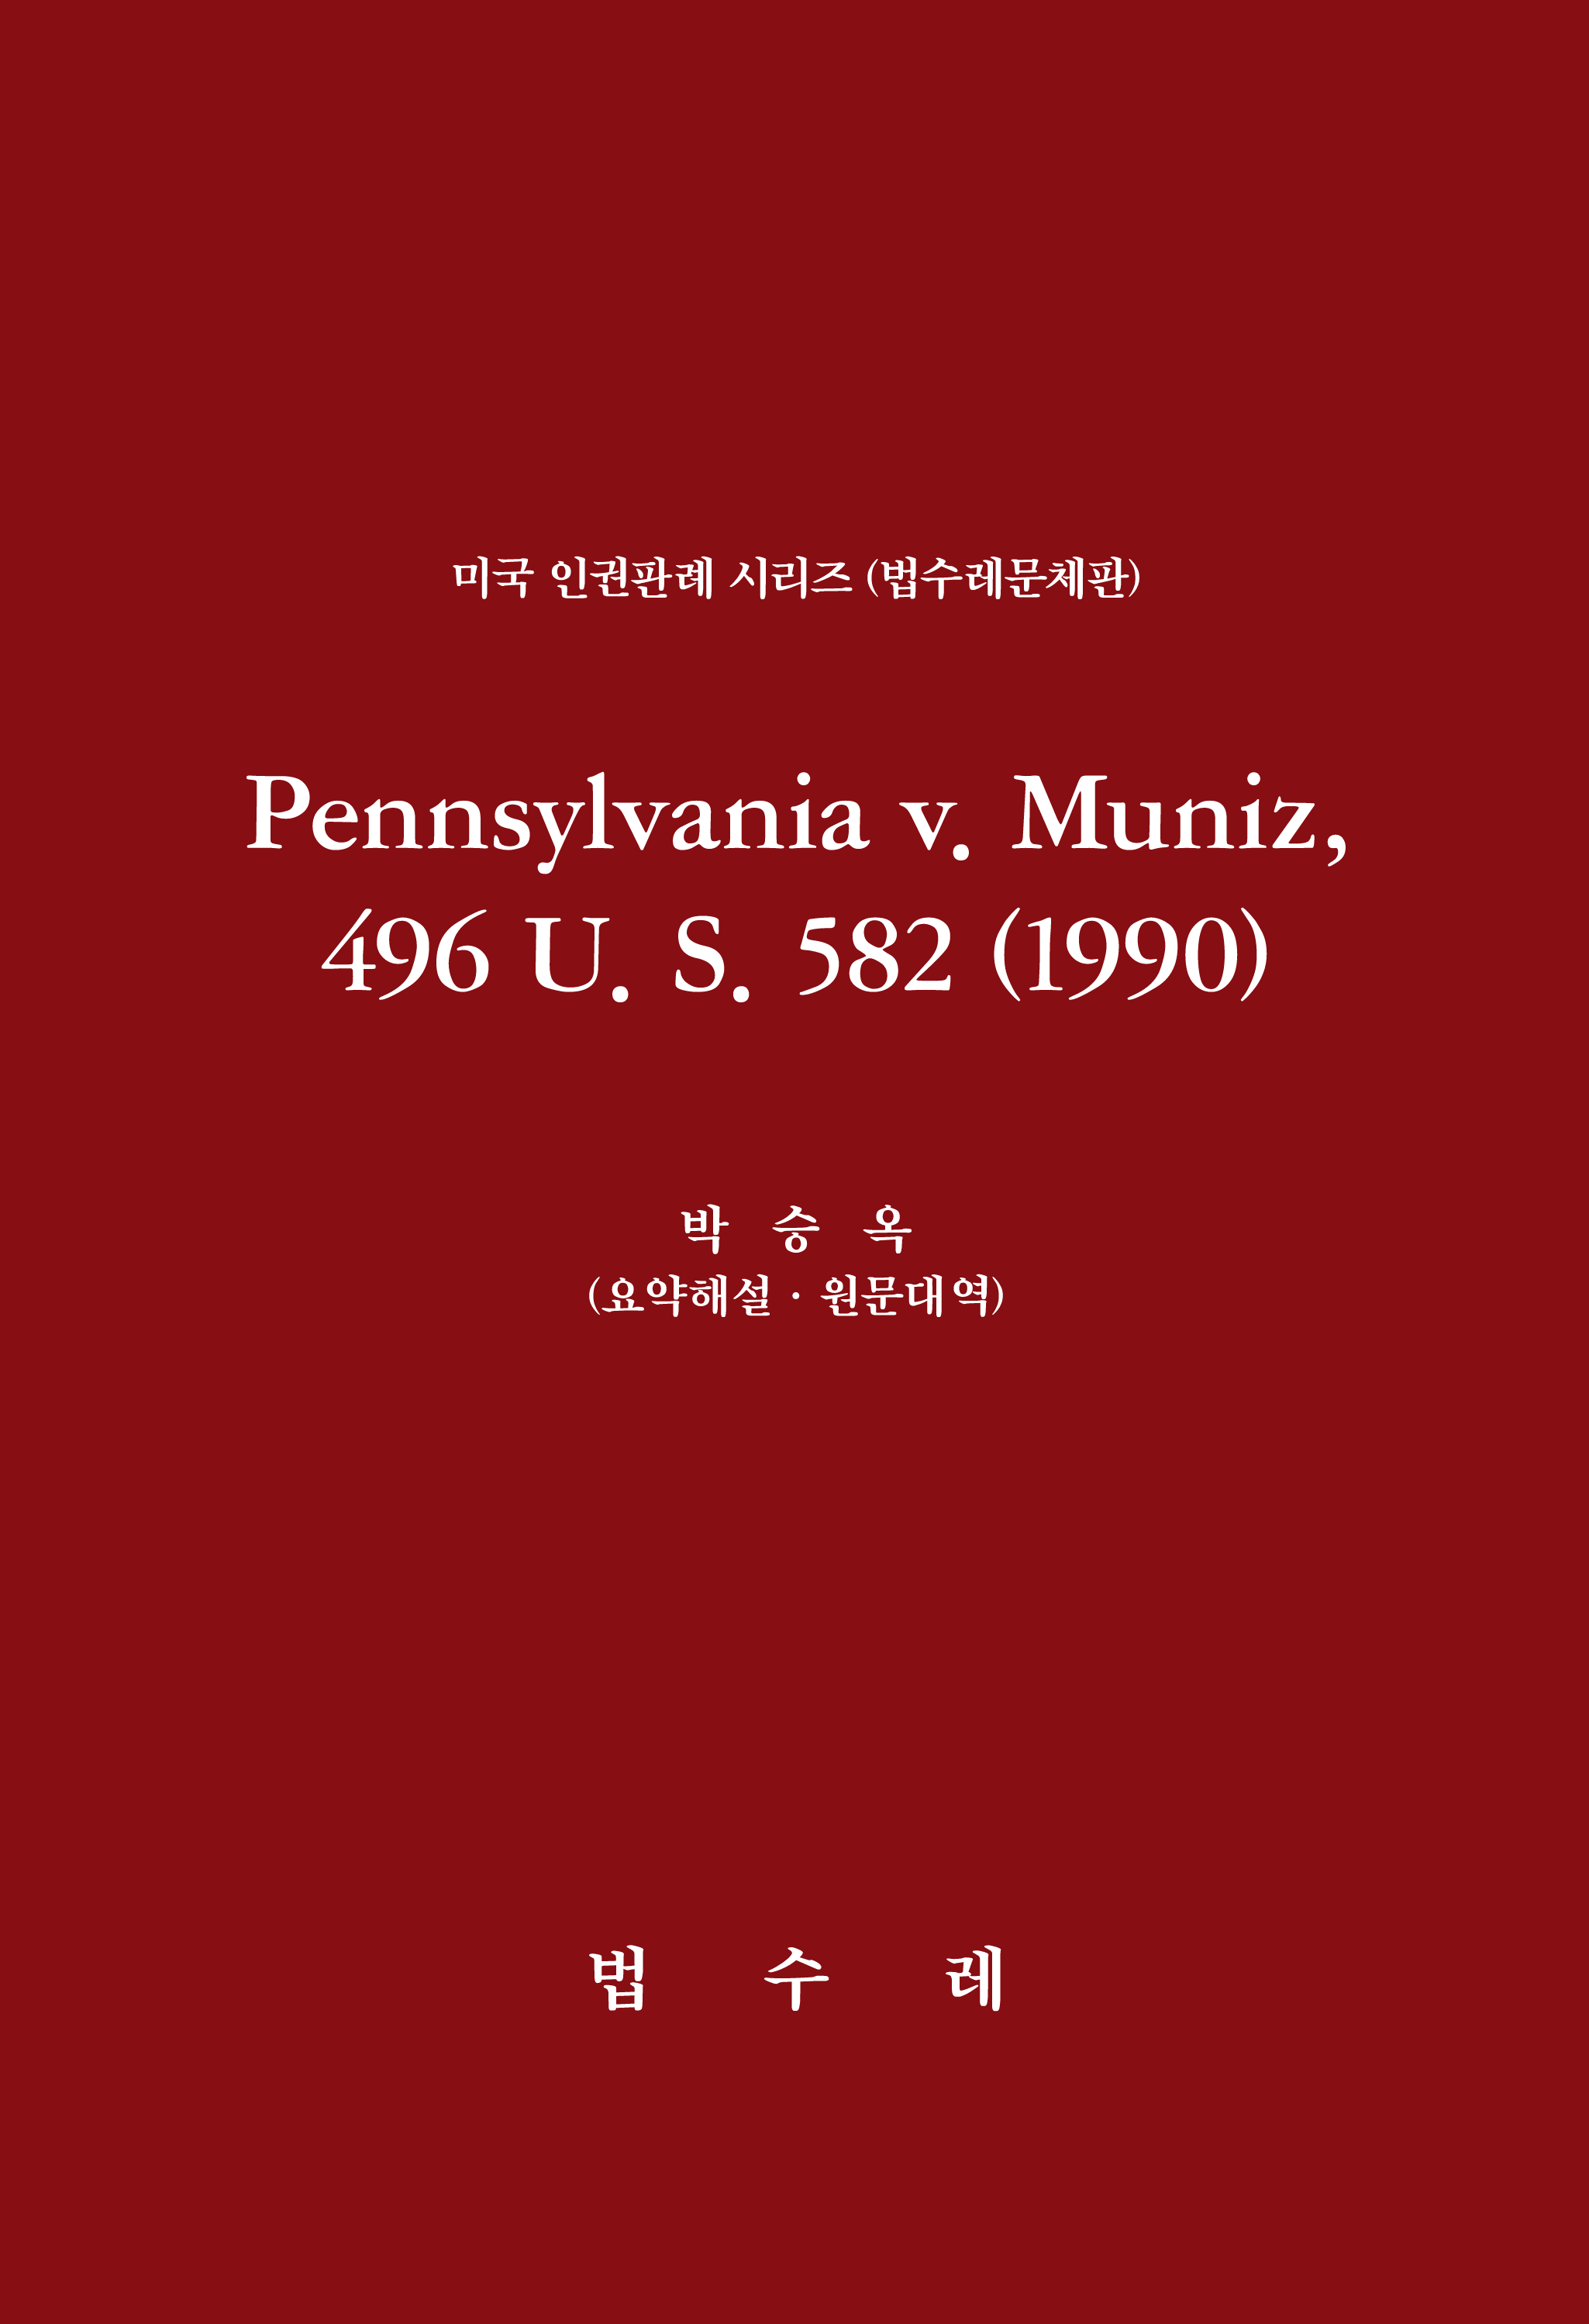 Pennsylvania v. Muniz, 496 U. S. 582 (1990)